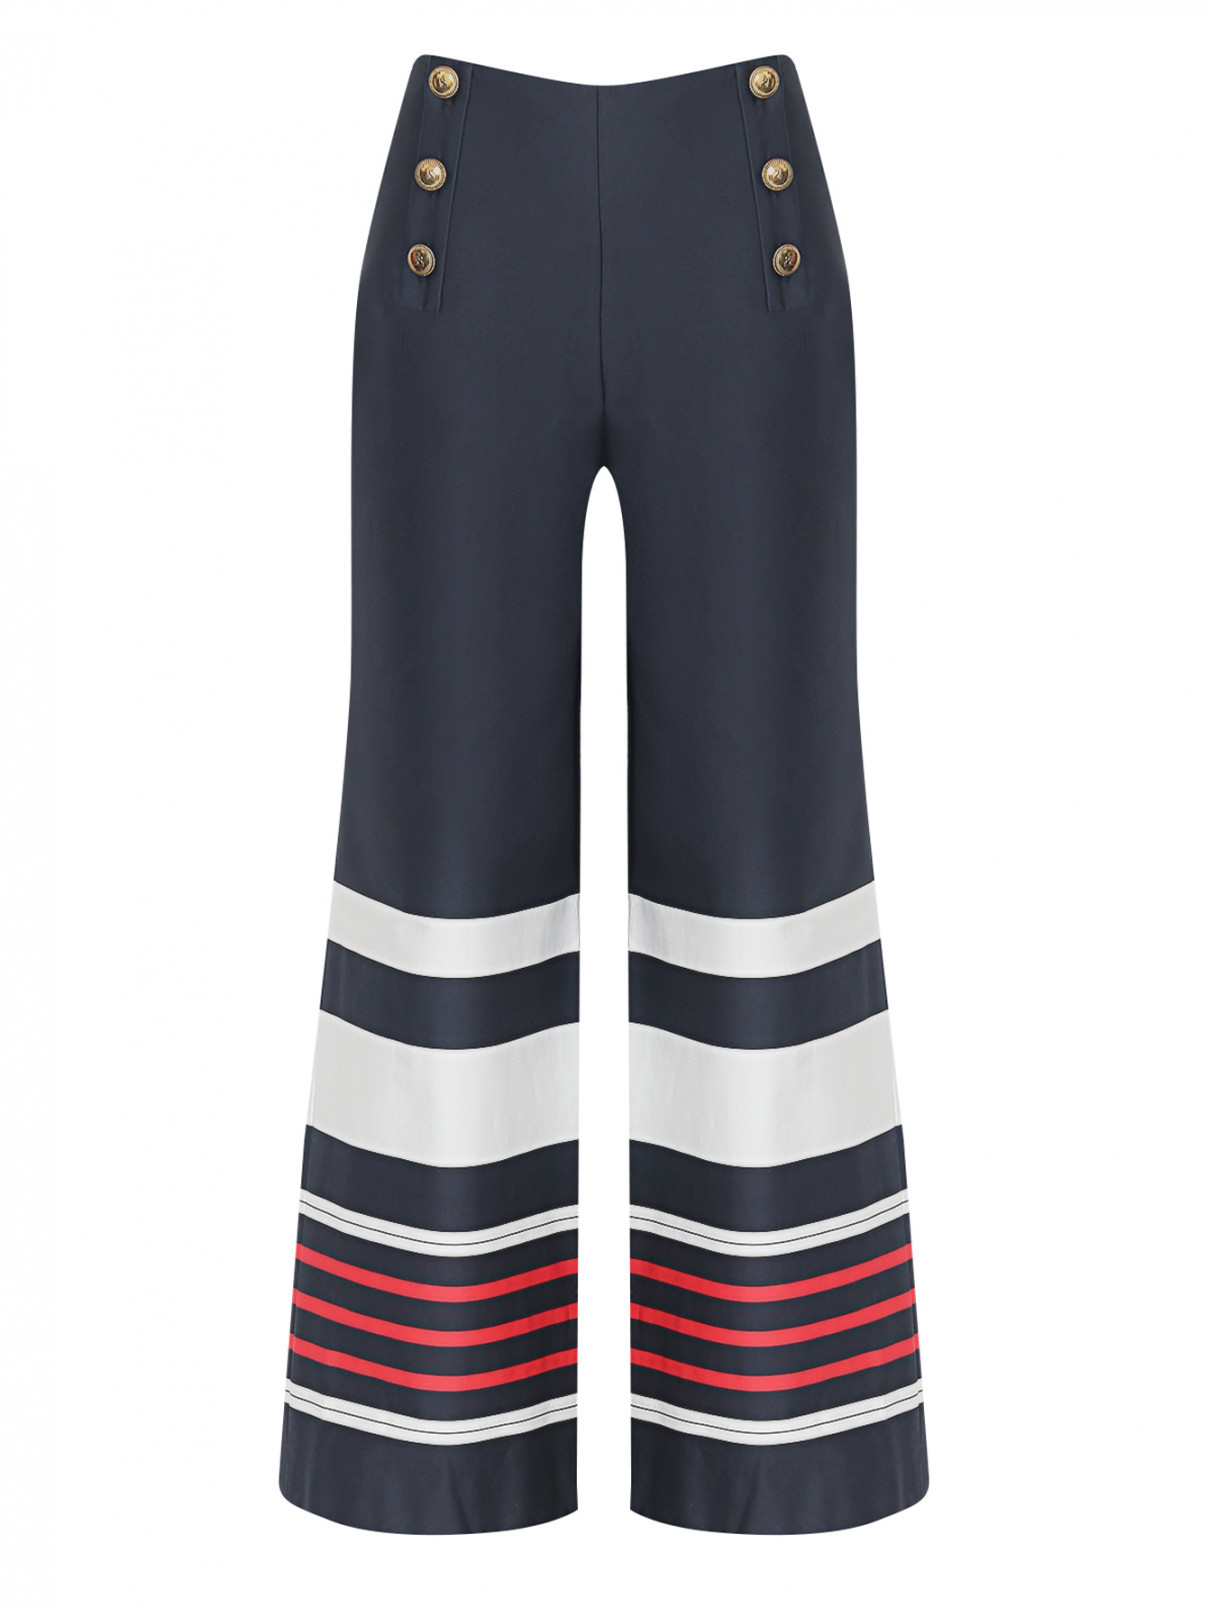 Широкие брюки с узором полоска Luisa Spagnoli  –  Общий вид  – Цвет:  Синий